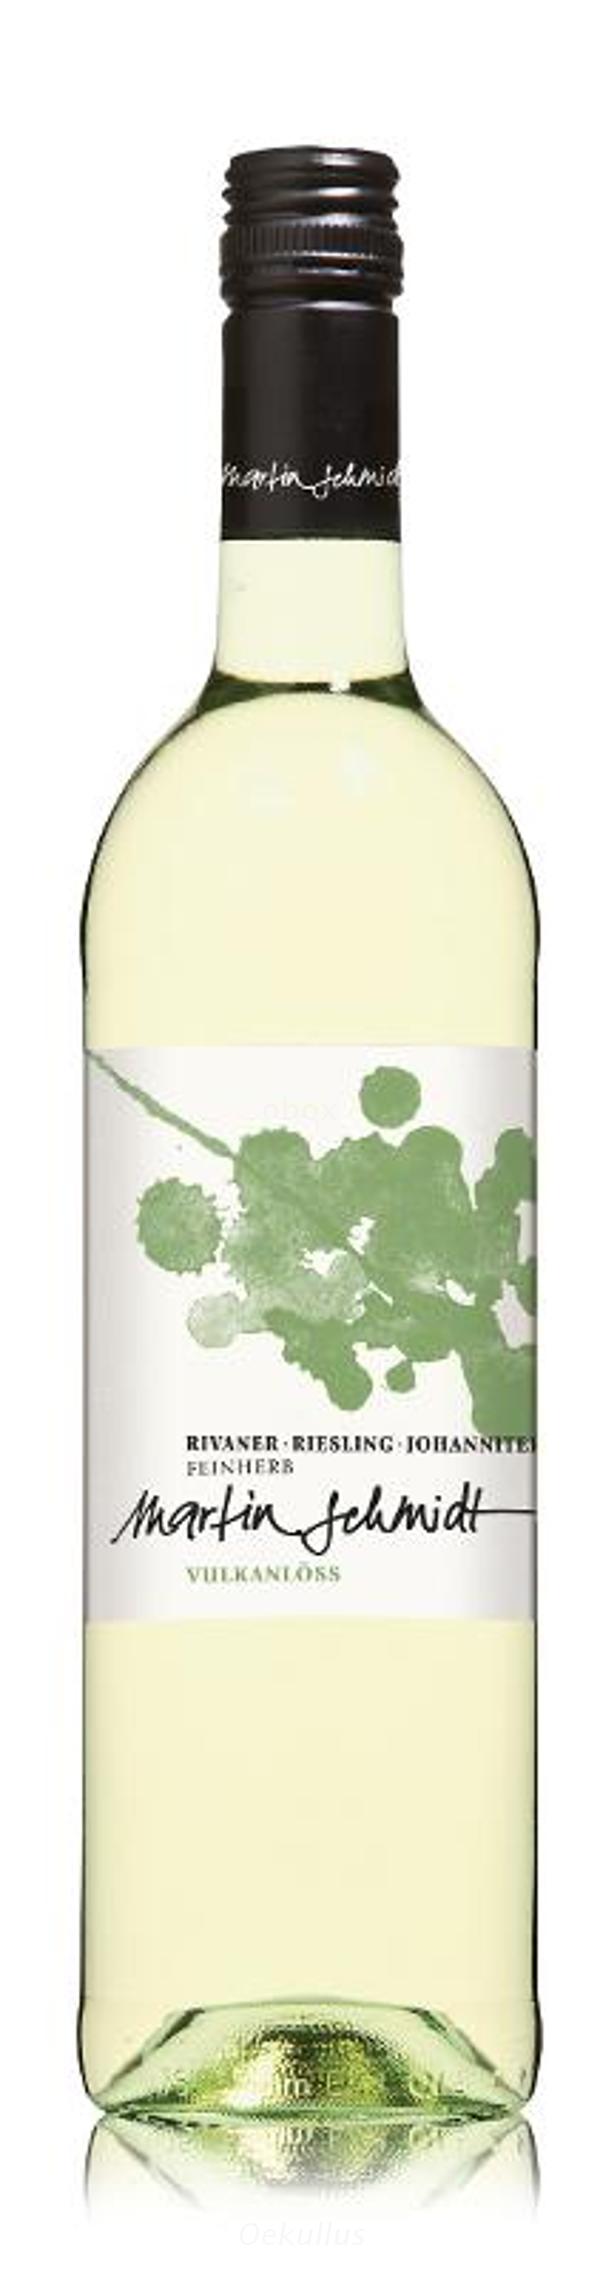 Produktfoto zu Vulkanlöss Weißwein